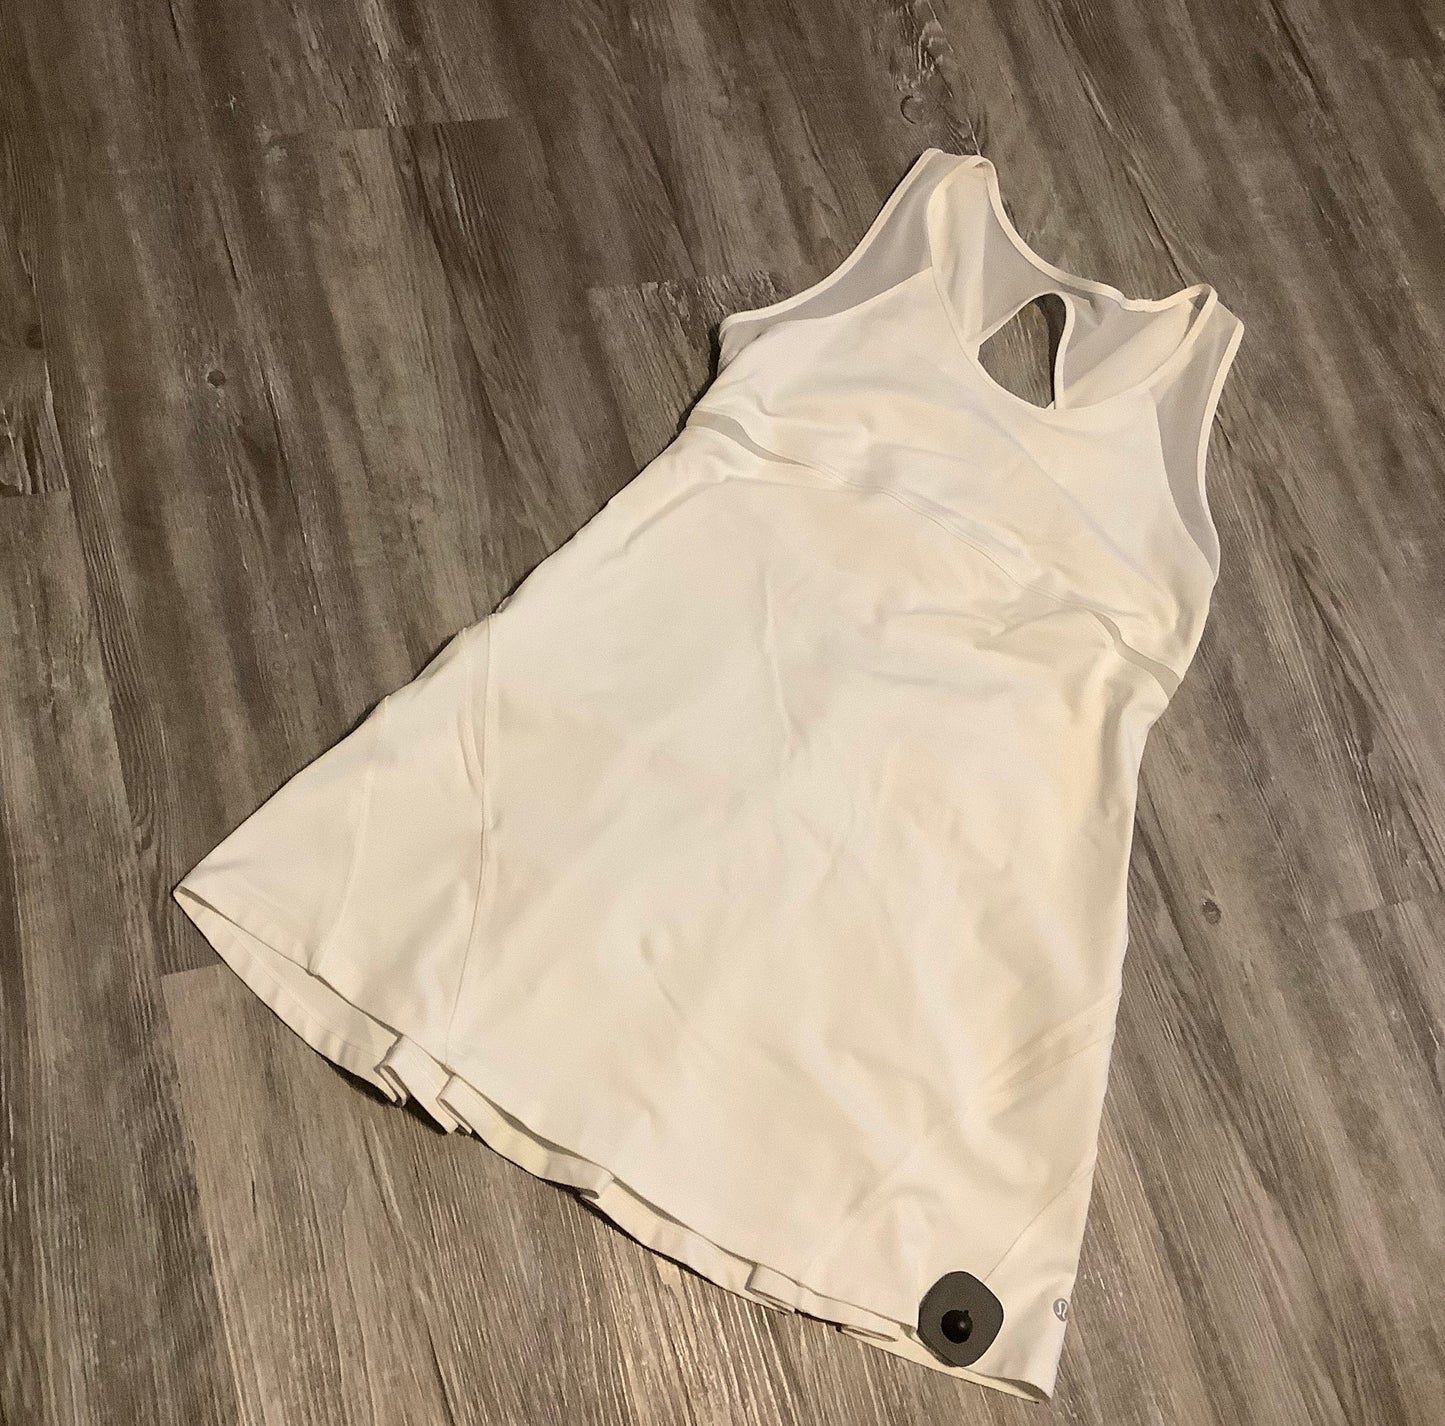 White Athletic Dress Lululemon, Size 8